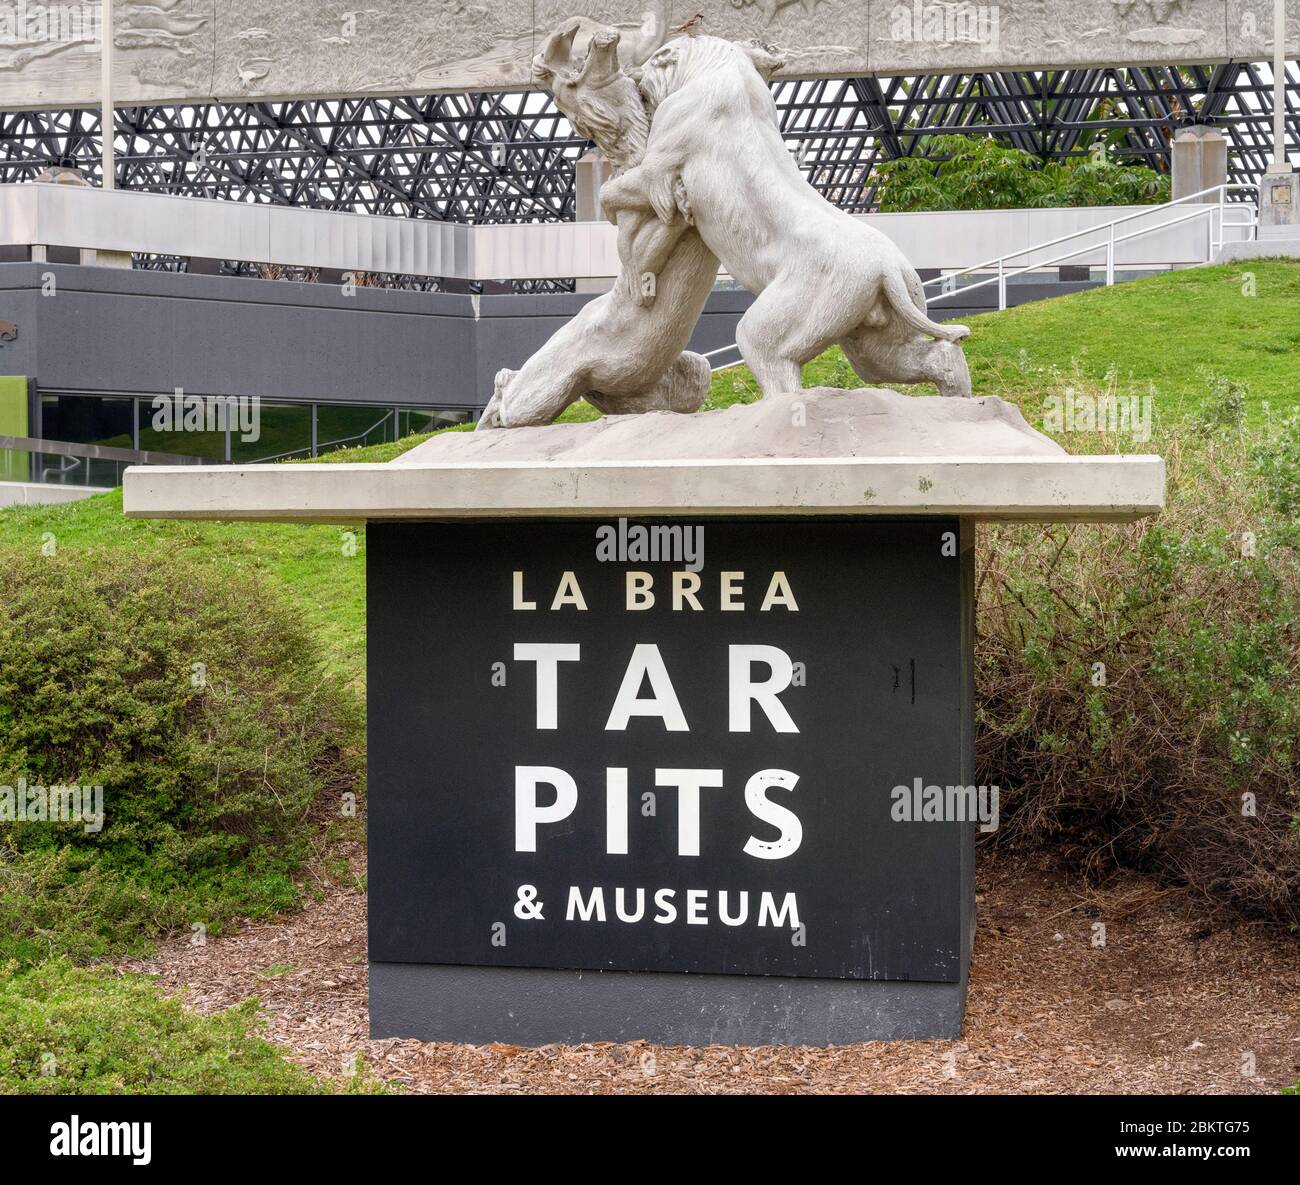 Entrée au musée de la Brea Tar Pits, Los Angeles, Californie, États-Unis Banque D'Images